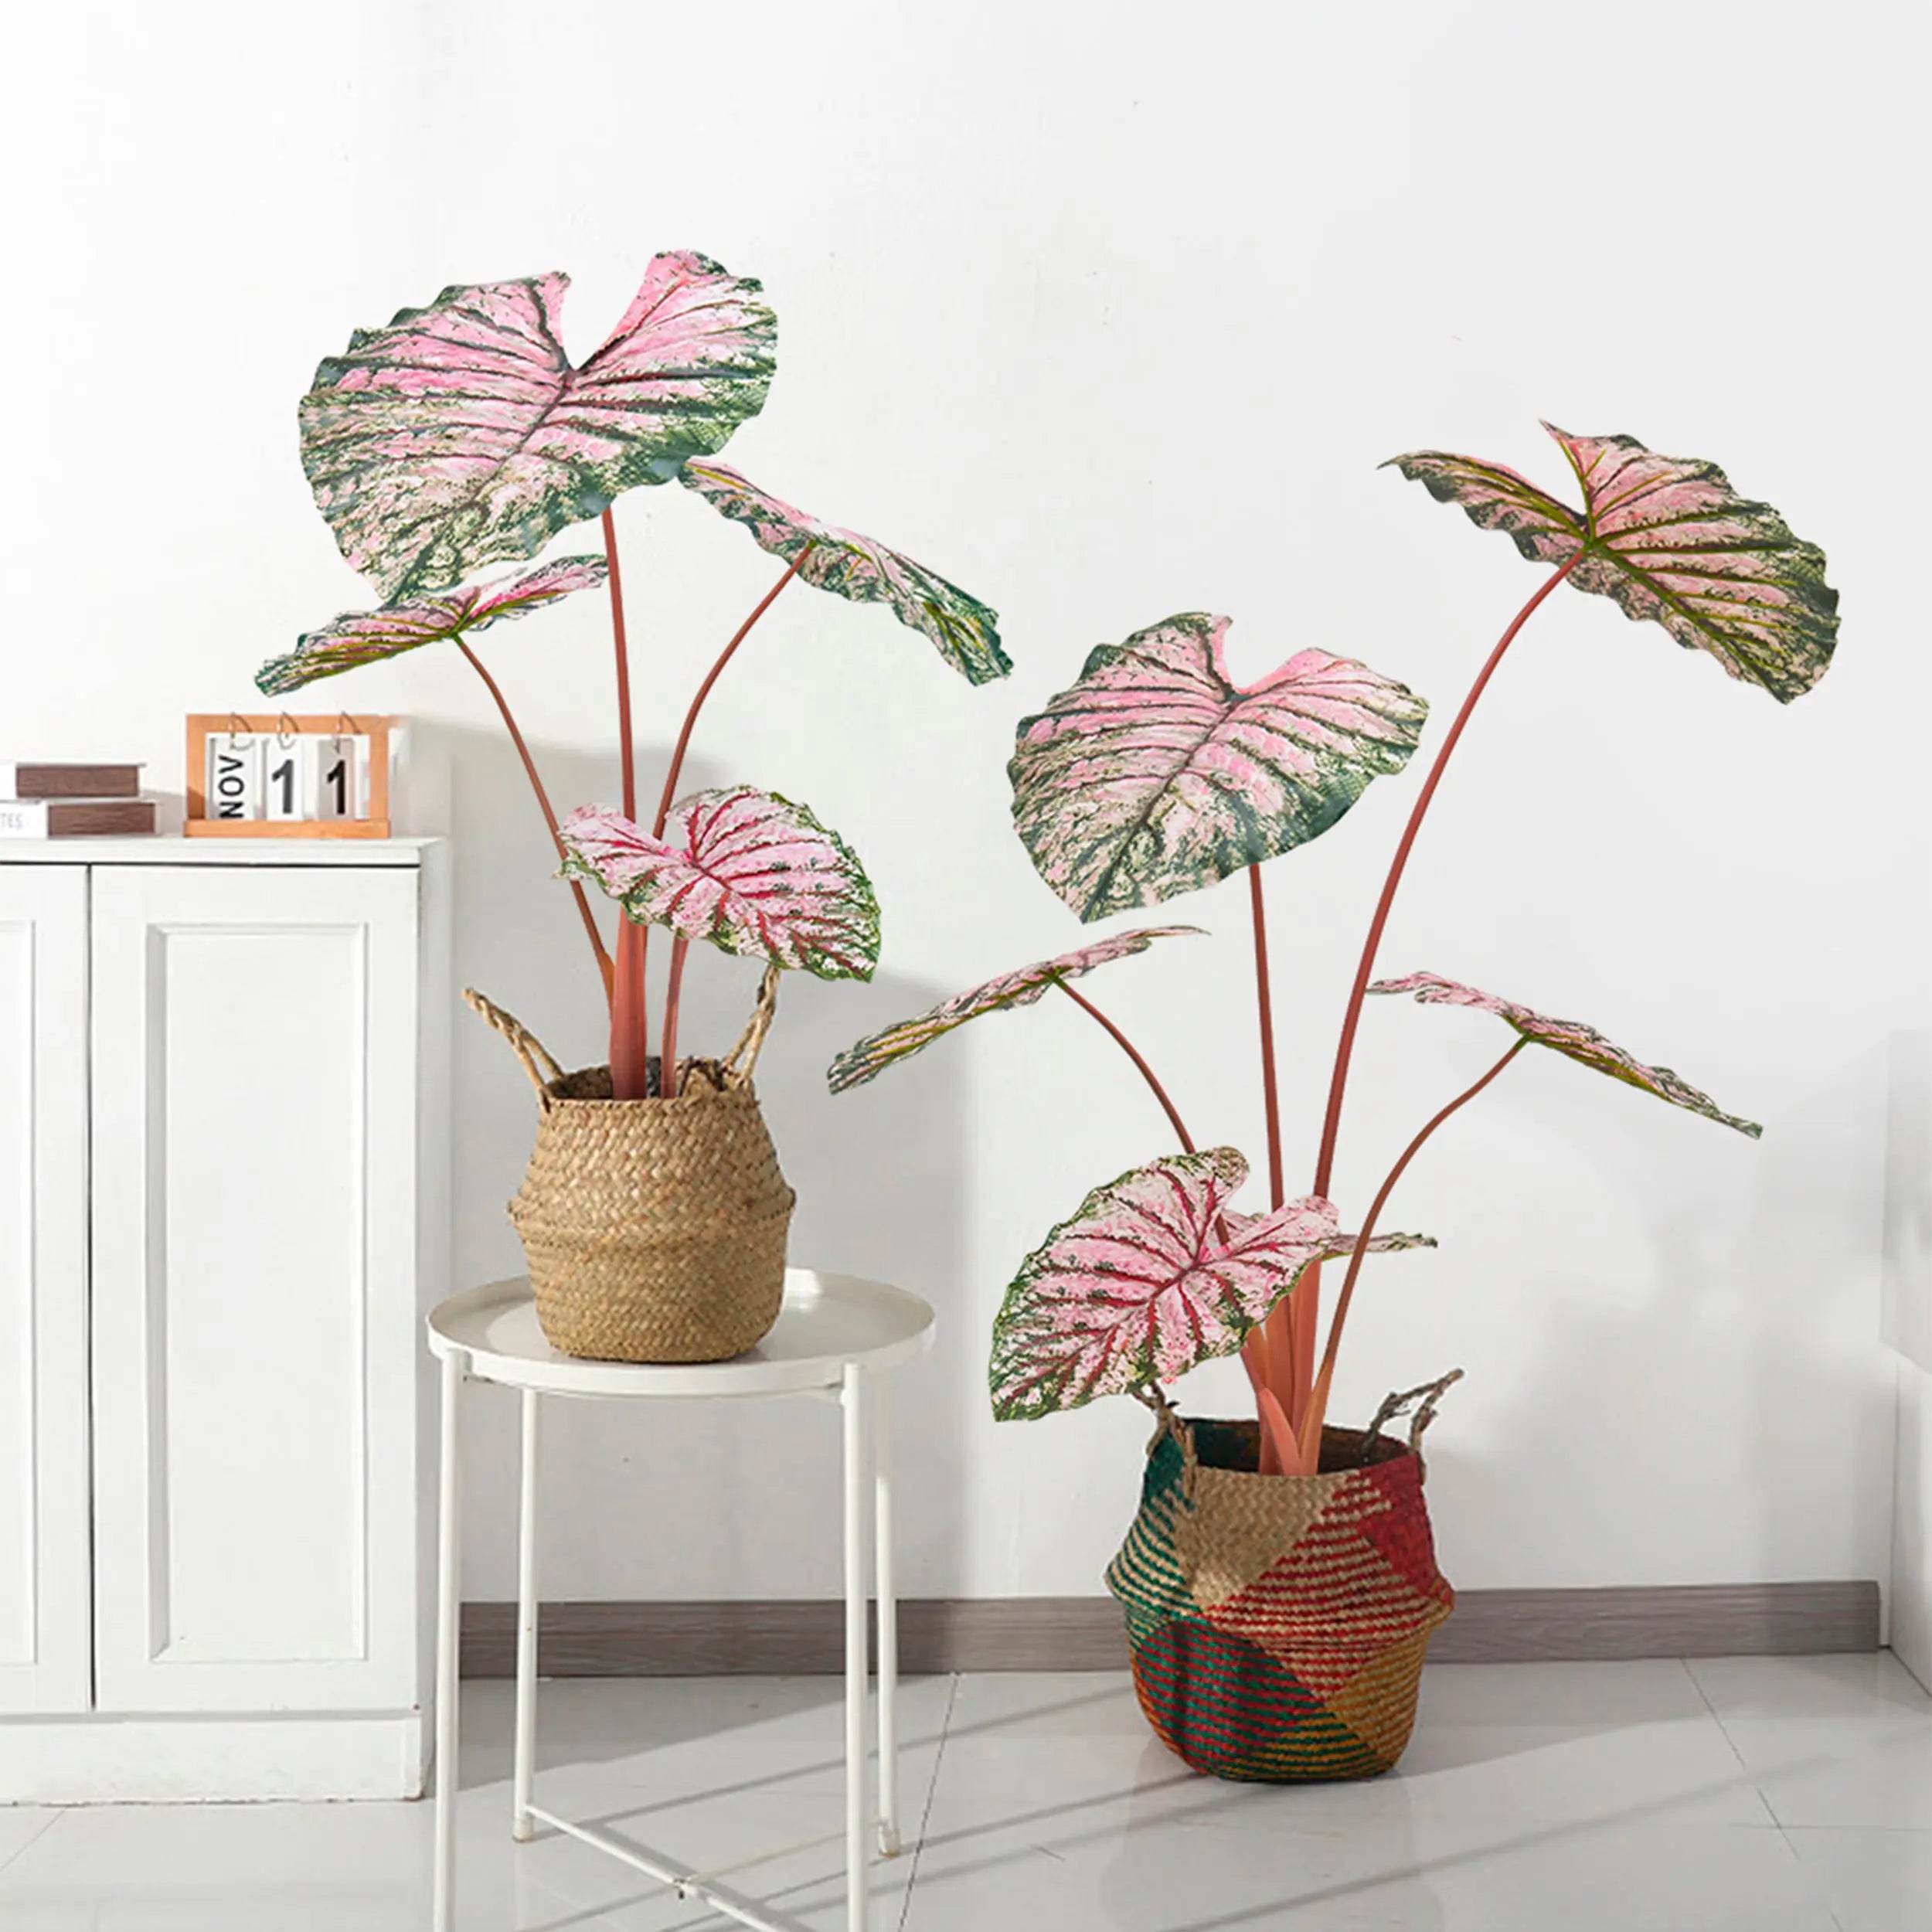 ▷ Plantas artificiales decorativas para interiores [2020]